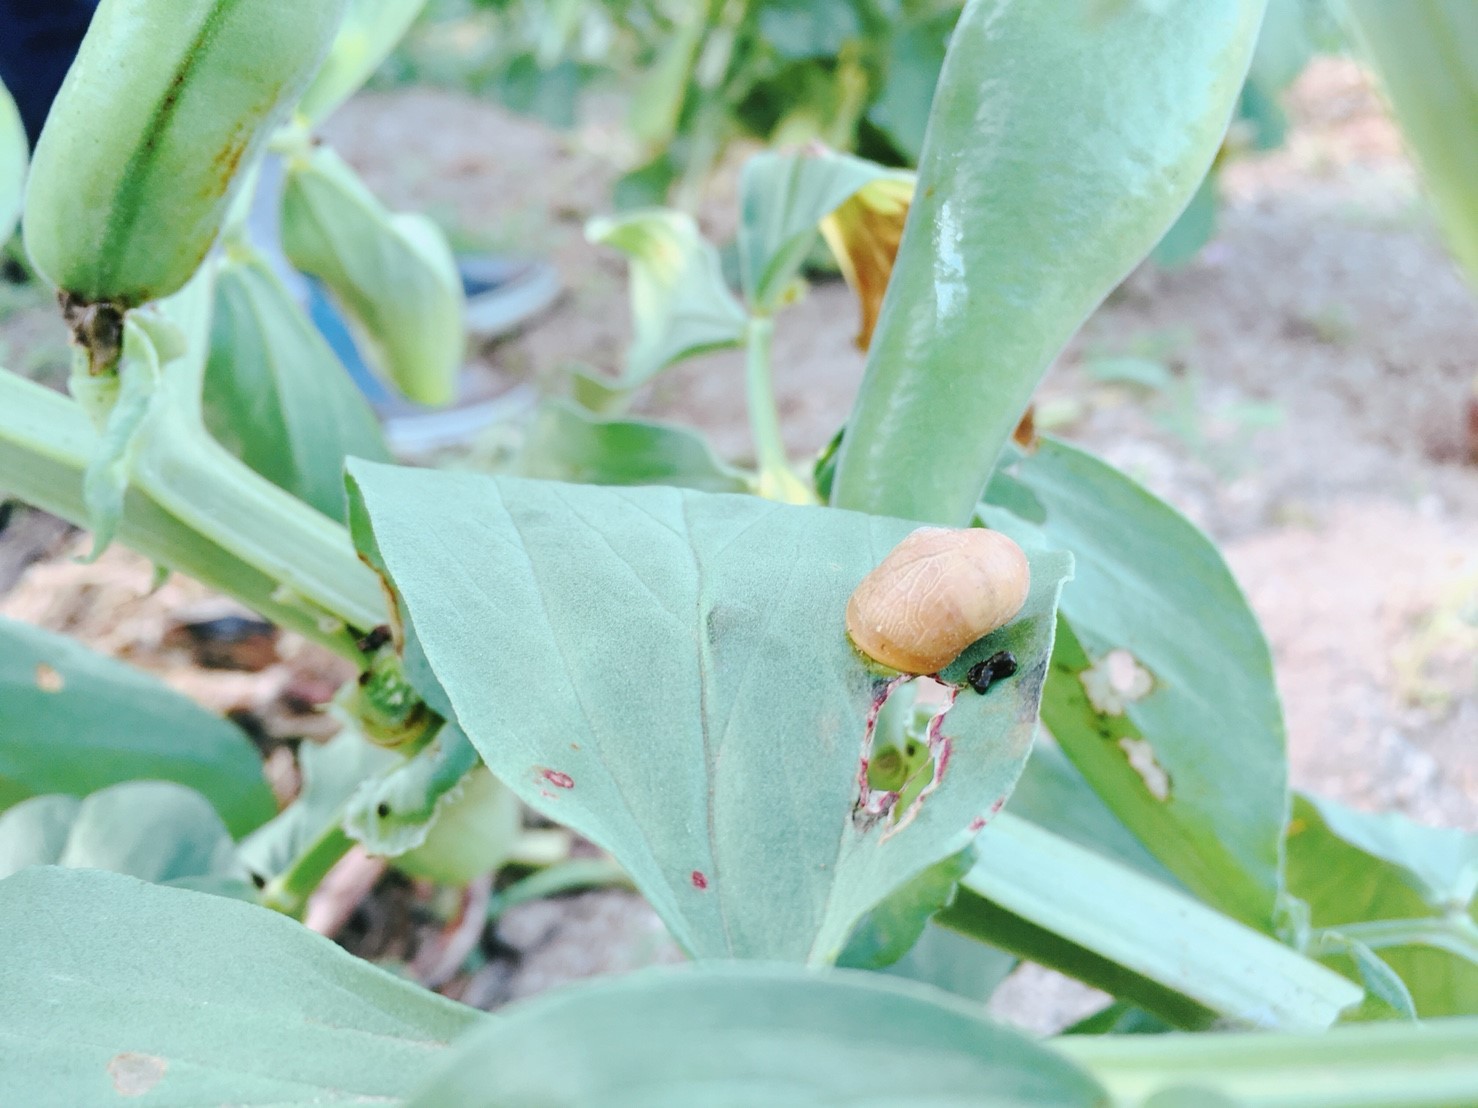 空豆の葉っぱの上にカタツムリを発見！土作りがしっかりしていれば、全ての野菜が虫に食べ尽くされてしまうことはほとんどないそう